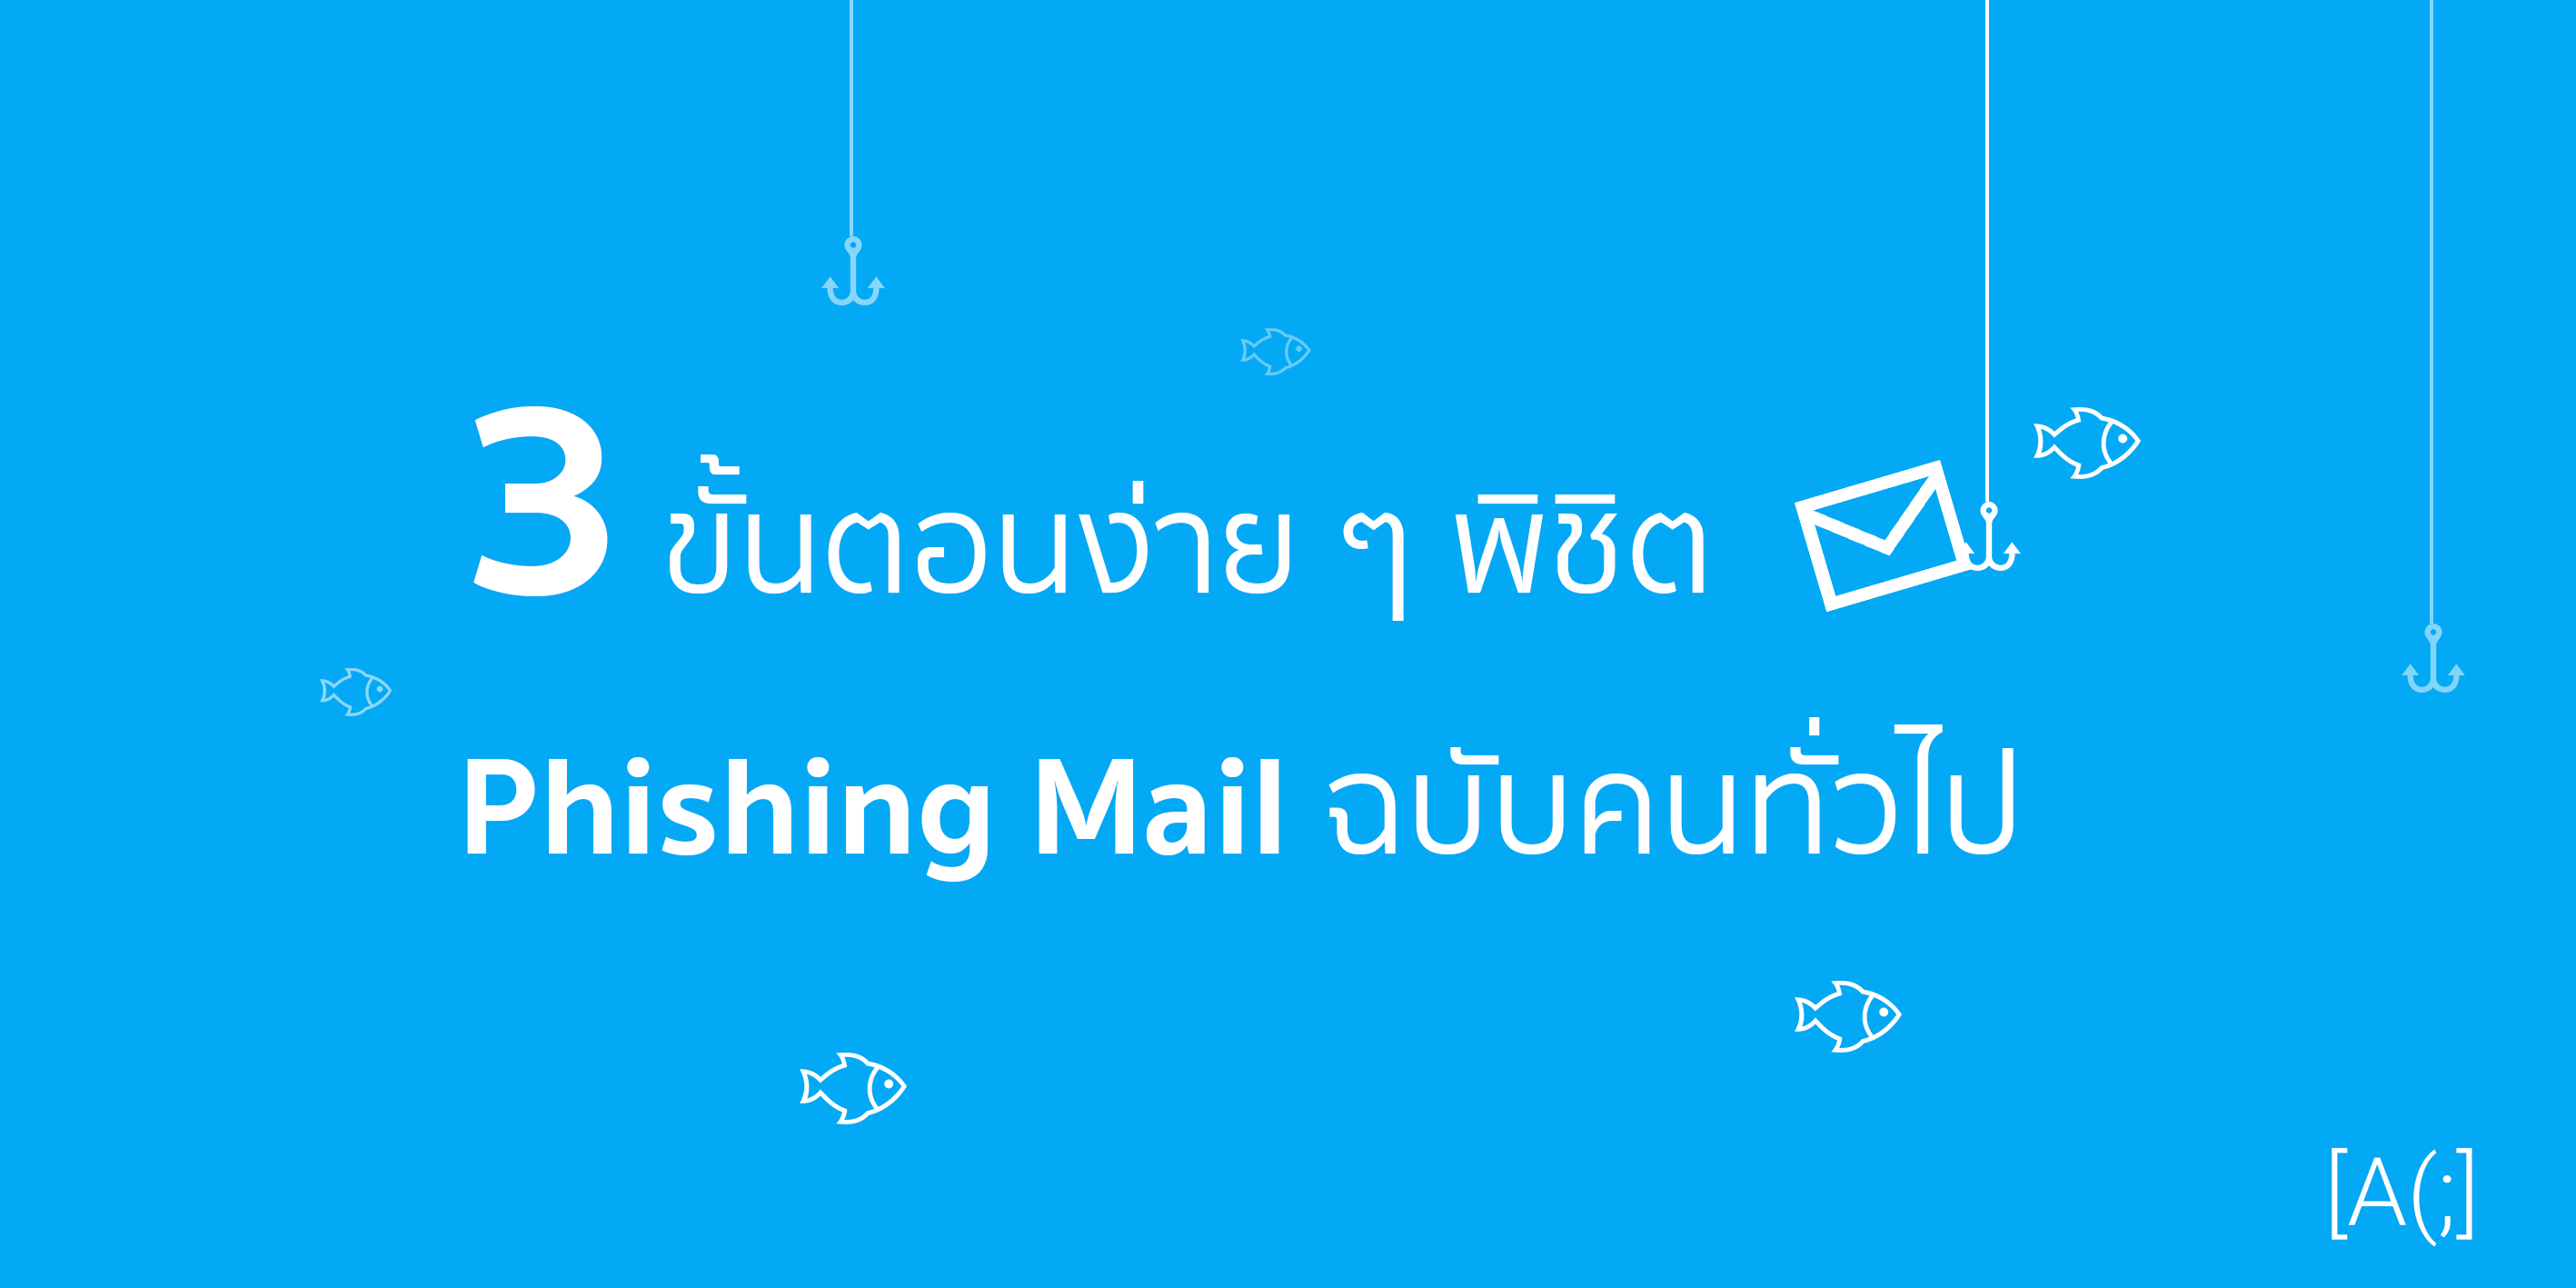 3 ขั้นตอนง่าย ๆ พิชิต Phishing Mail ฉบับคนทั่วไป